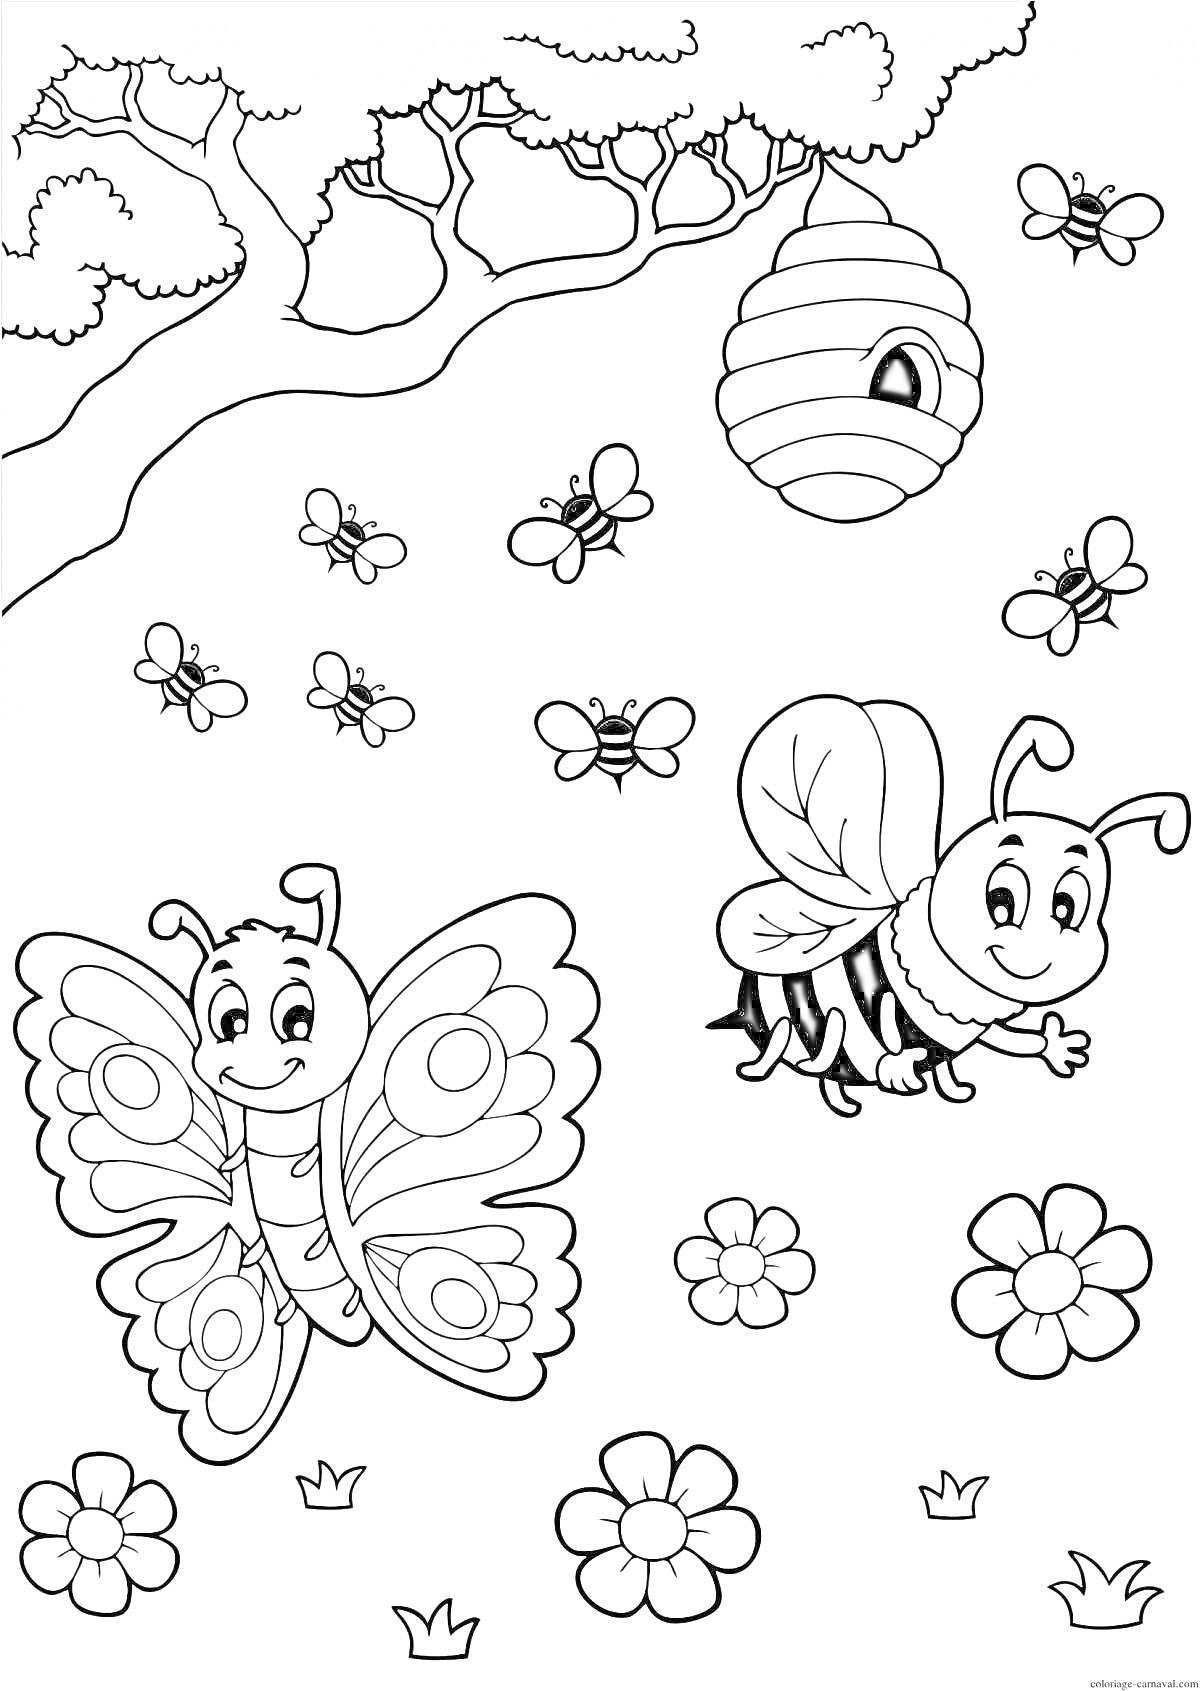 Раскраска Бабочка и пчела возле цветков под деревом с ульем и окружающими их пчелами